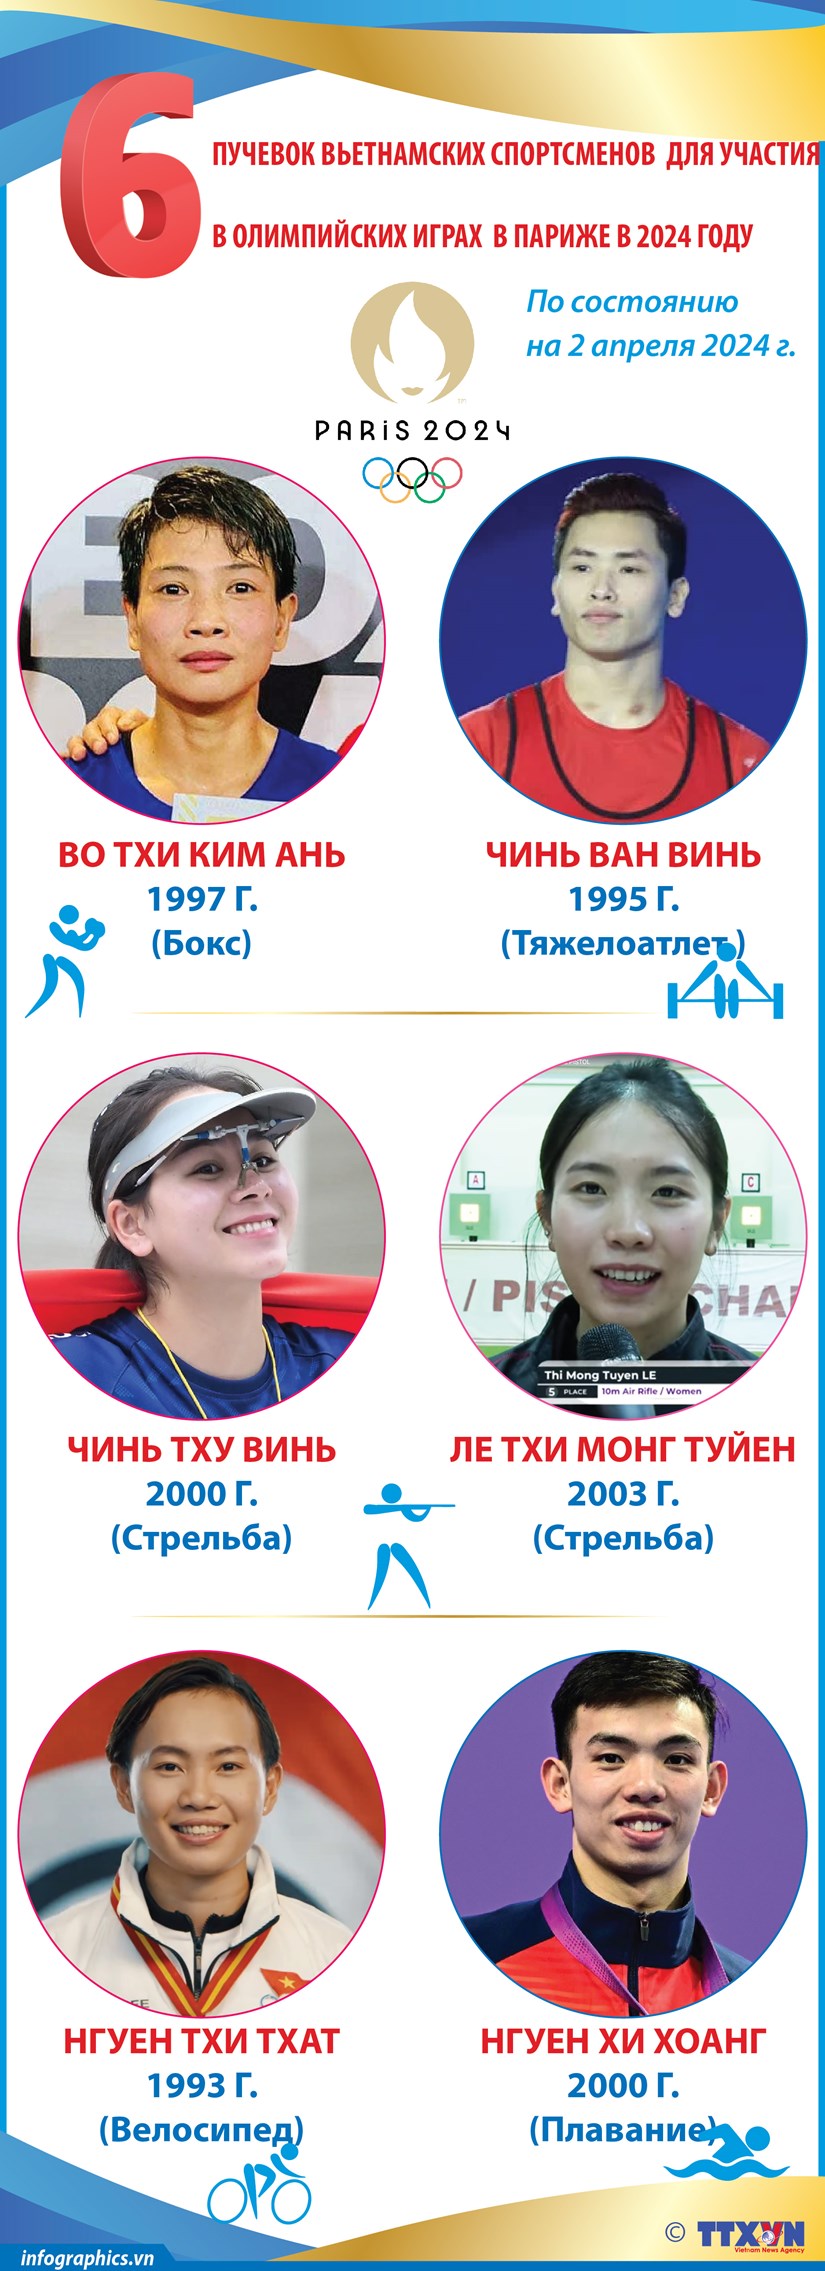 6 путевок вьетнамских спортсменов для участия в Олимпииских играх в Париже в 2024 году hinh anh 1